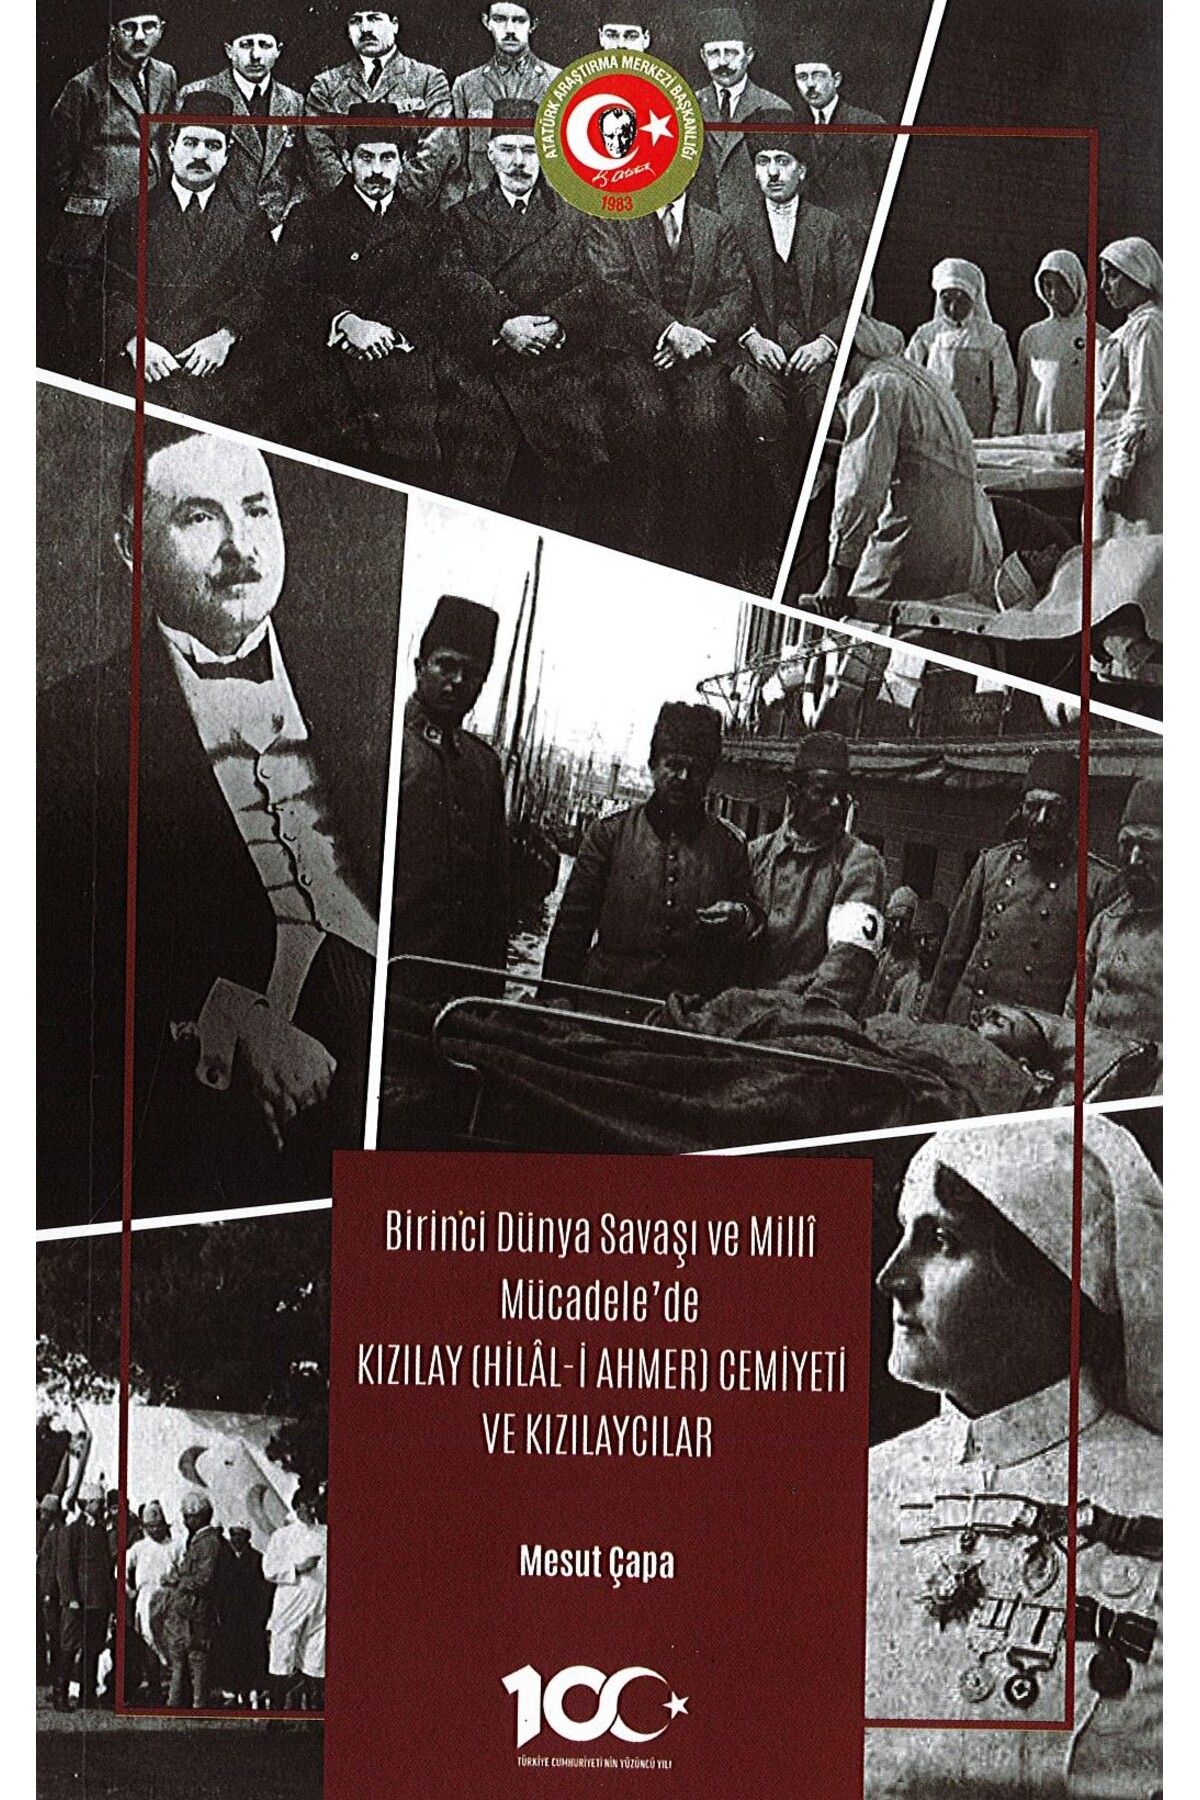 Atatürk Araştırma Merkezi Birinci Dünya Savaşı ve Milli Mücadele’de Kızılay (Hilâl-i Ahmer) Cemiyeti ve Kızılaycılar